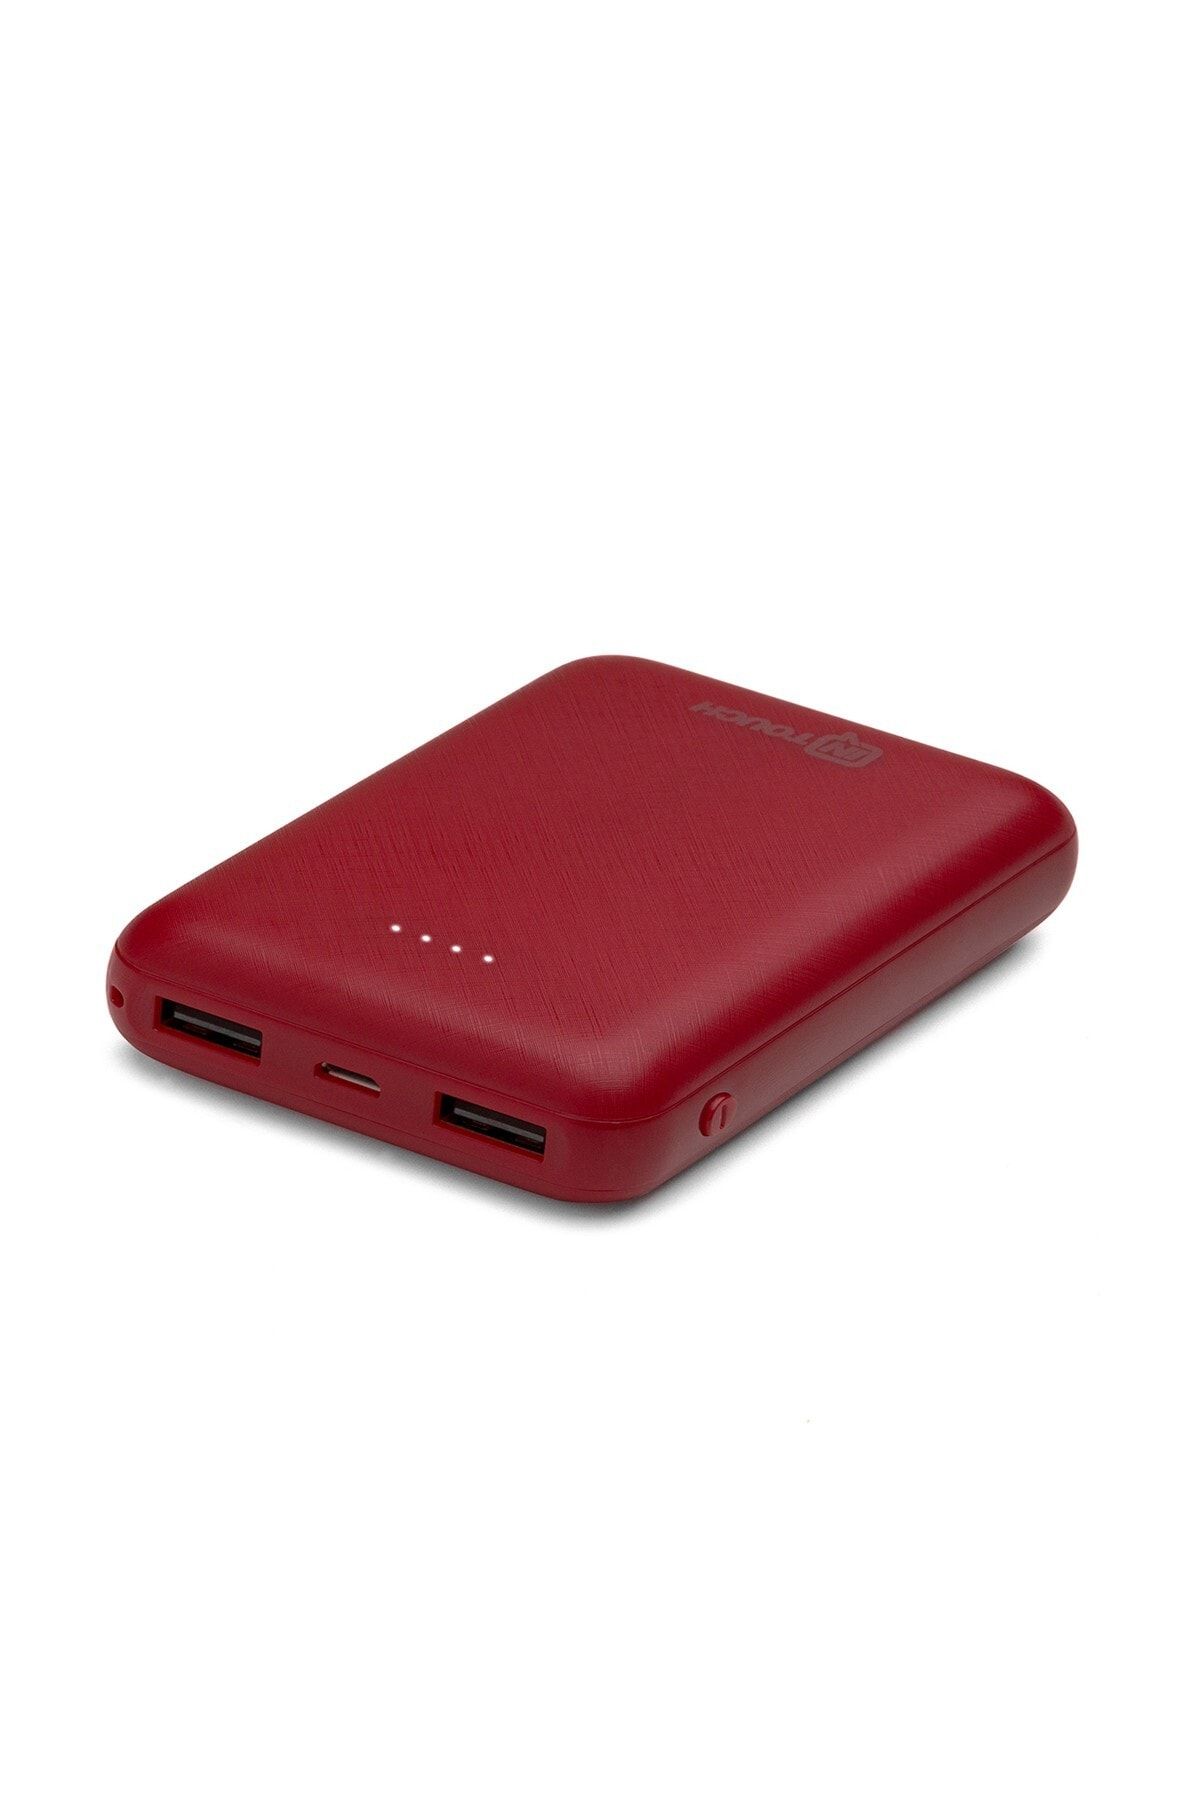 İntouch Basic 10.000 Mah. 2 Çıkışlı Taşınabilir Sarj Cihazı Powerbank Kırmızı